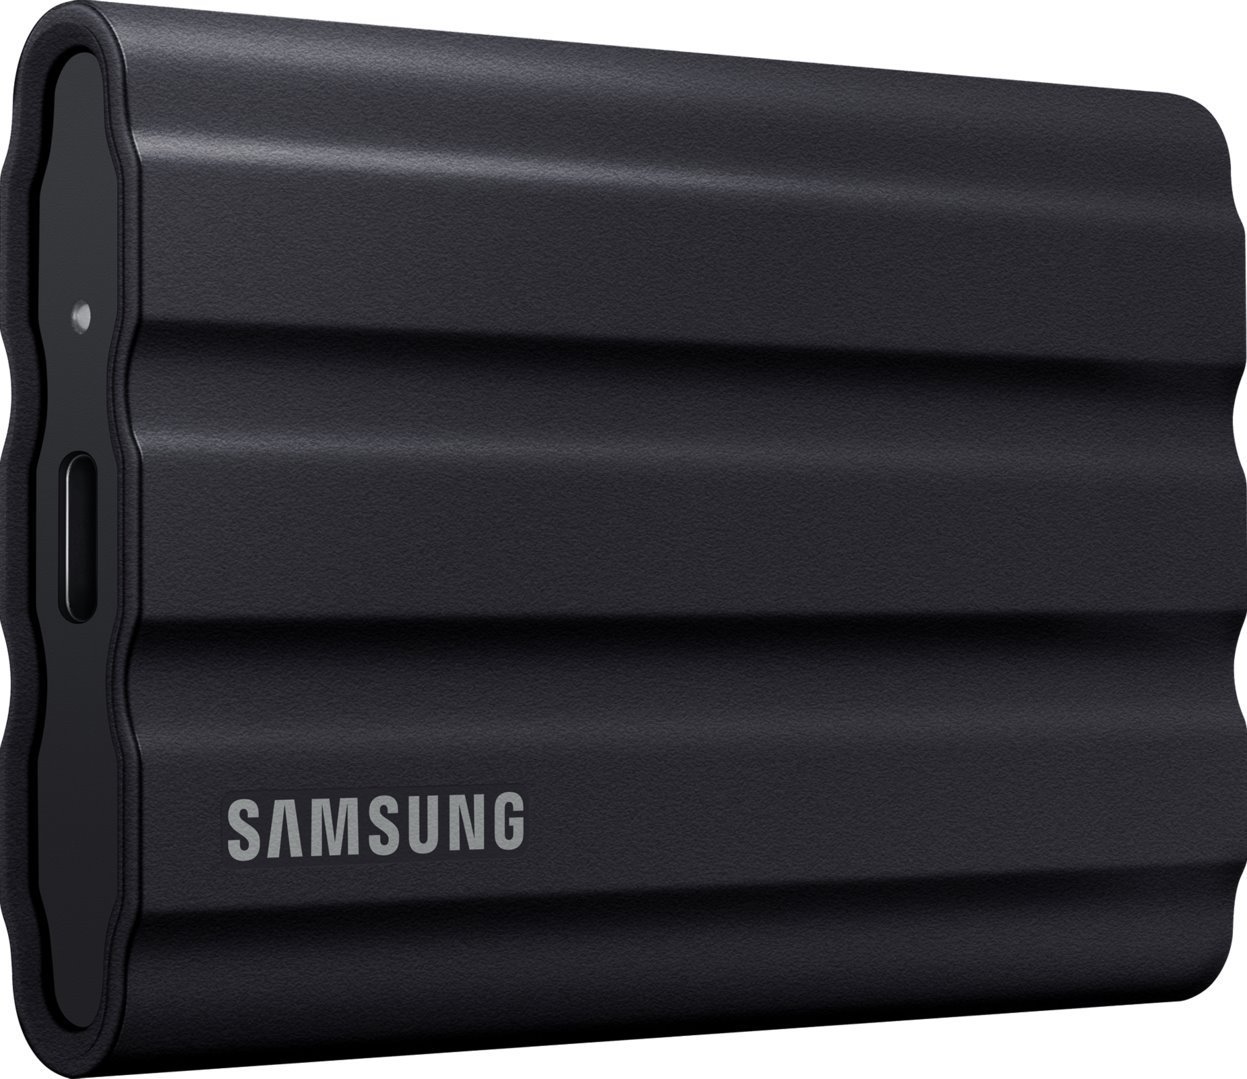 Samsung SSD T7 Shield 4TB černý